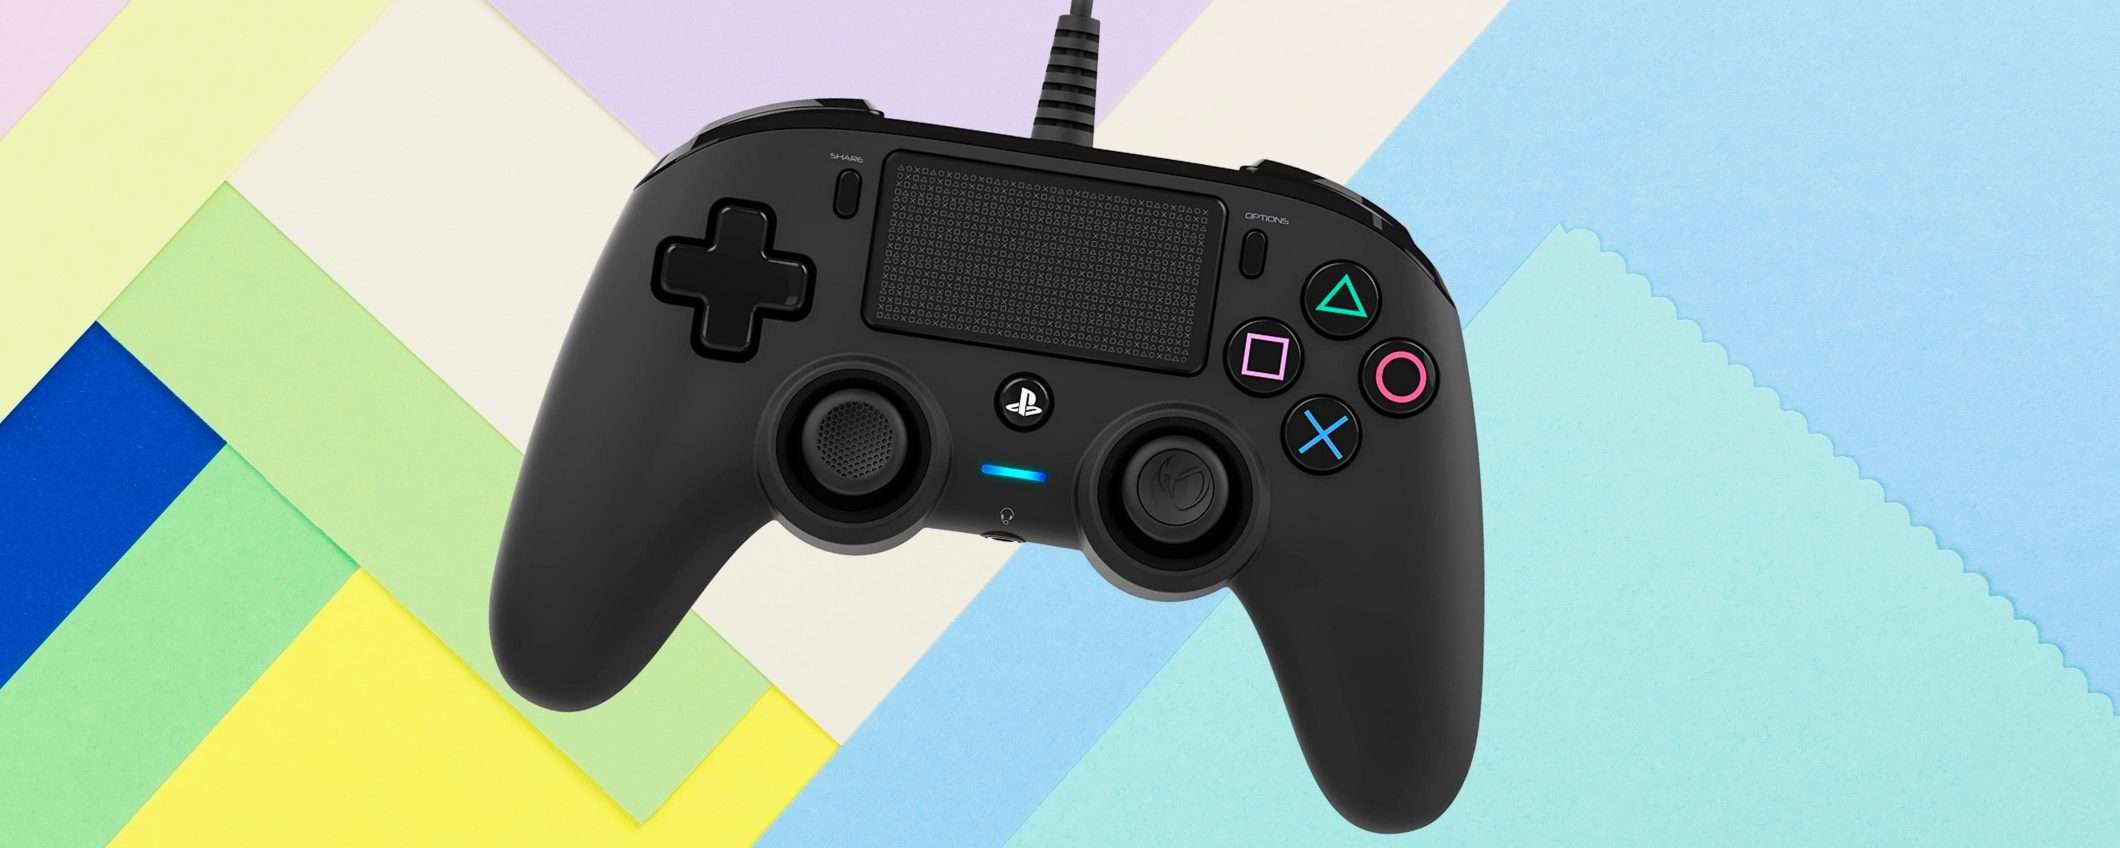 PS4 come nuova con questo controller Nacon, prezzo REGALO per poco